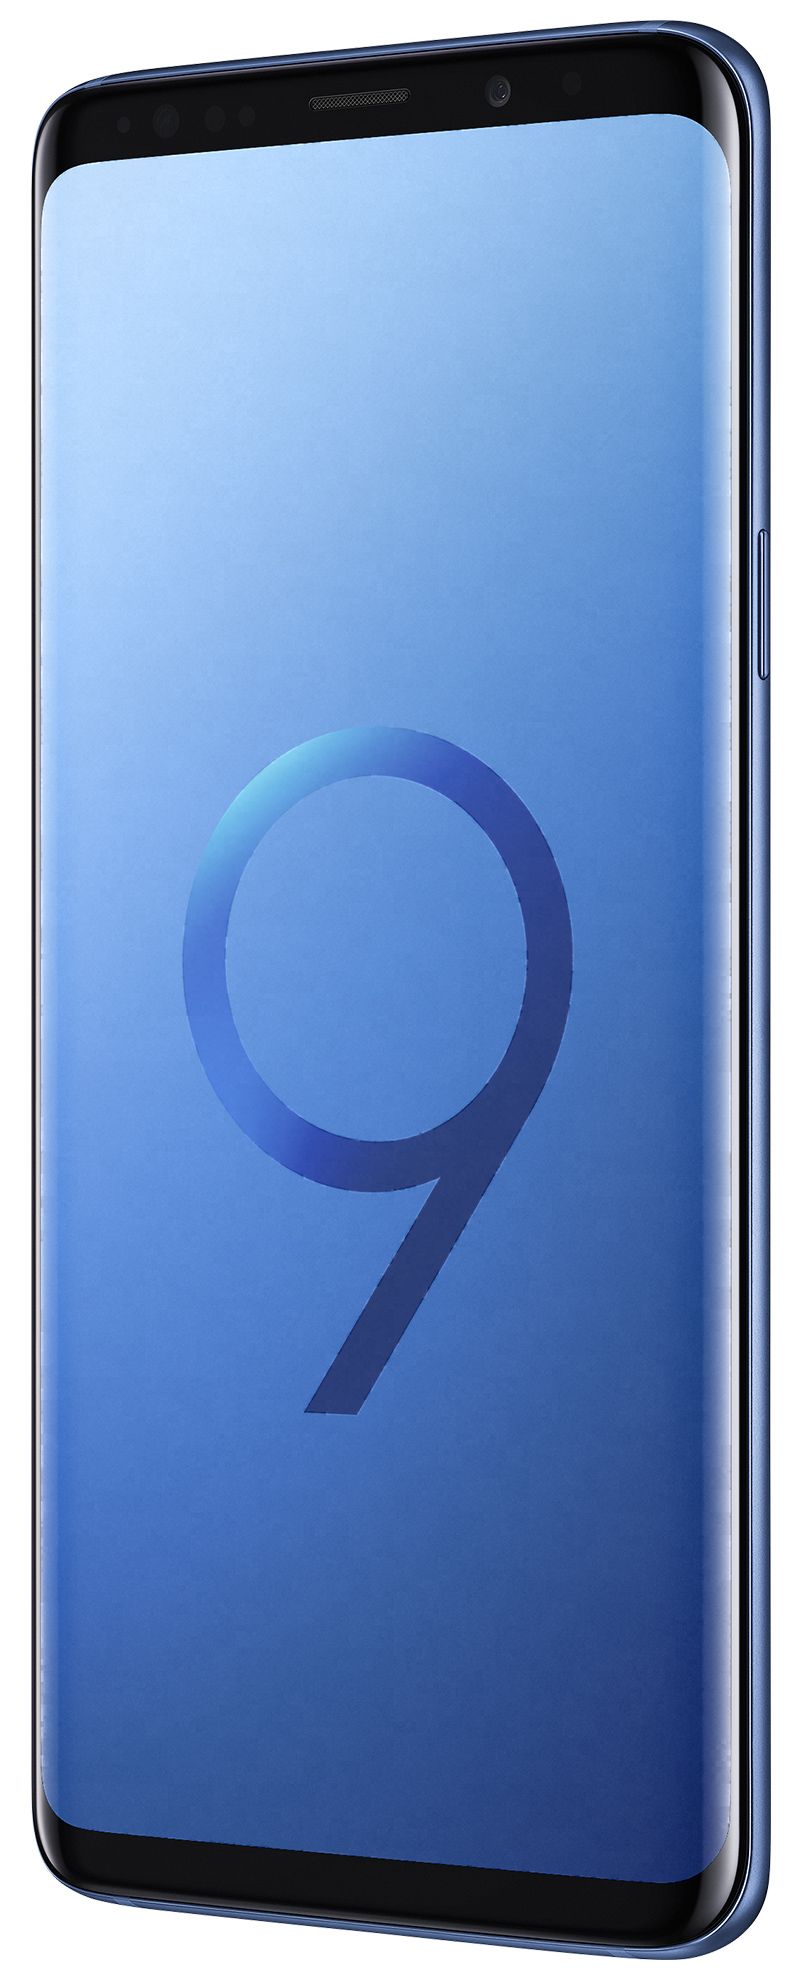 Samsung Galaxy S9+ DS bleu 64Go